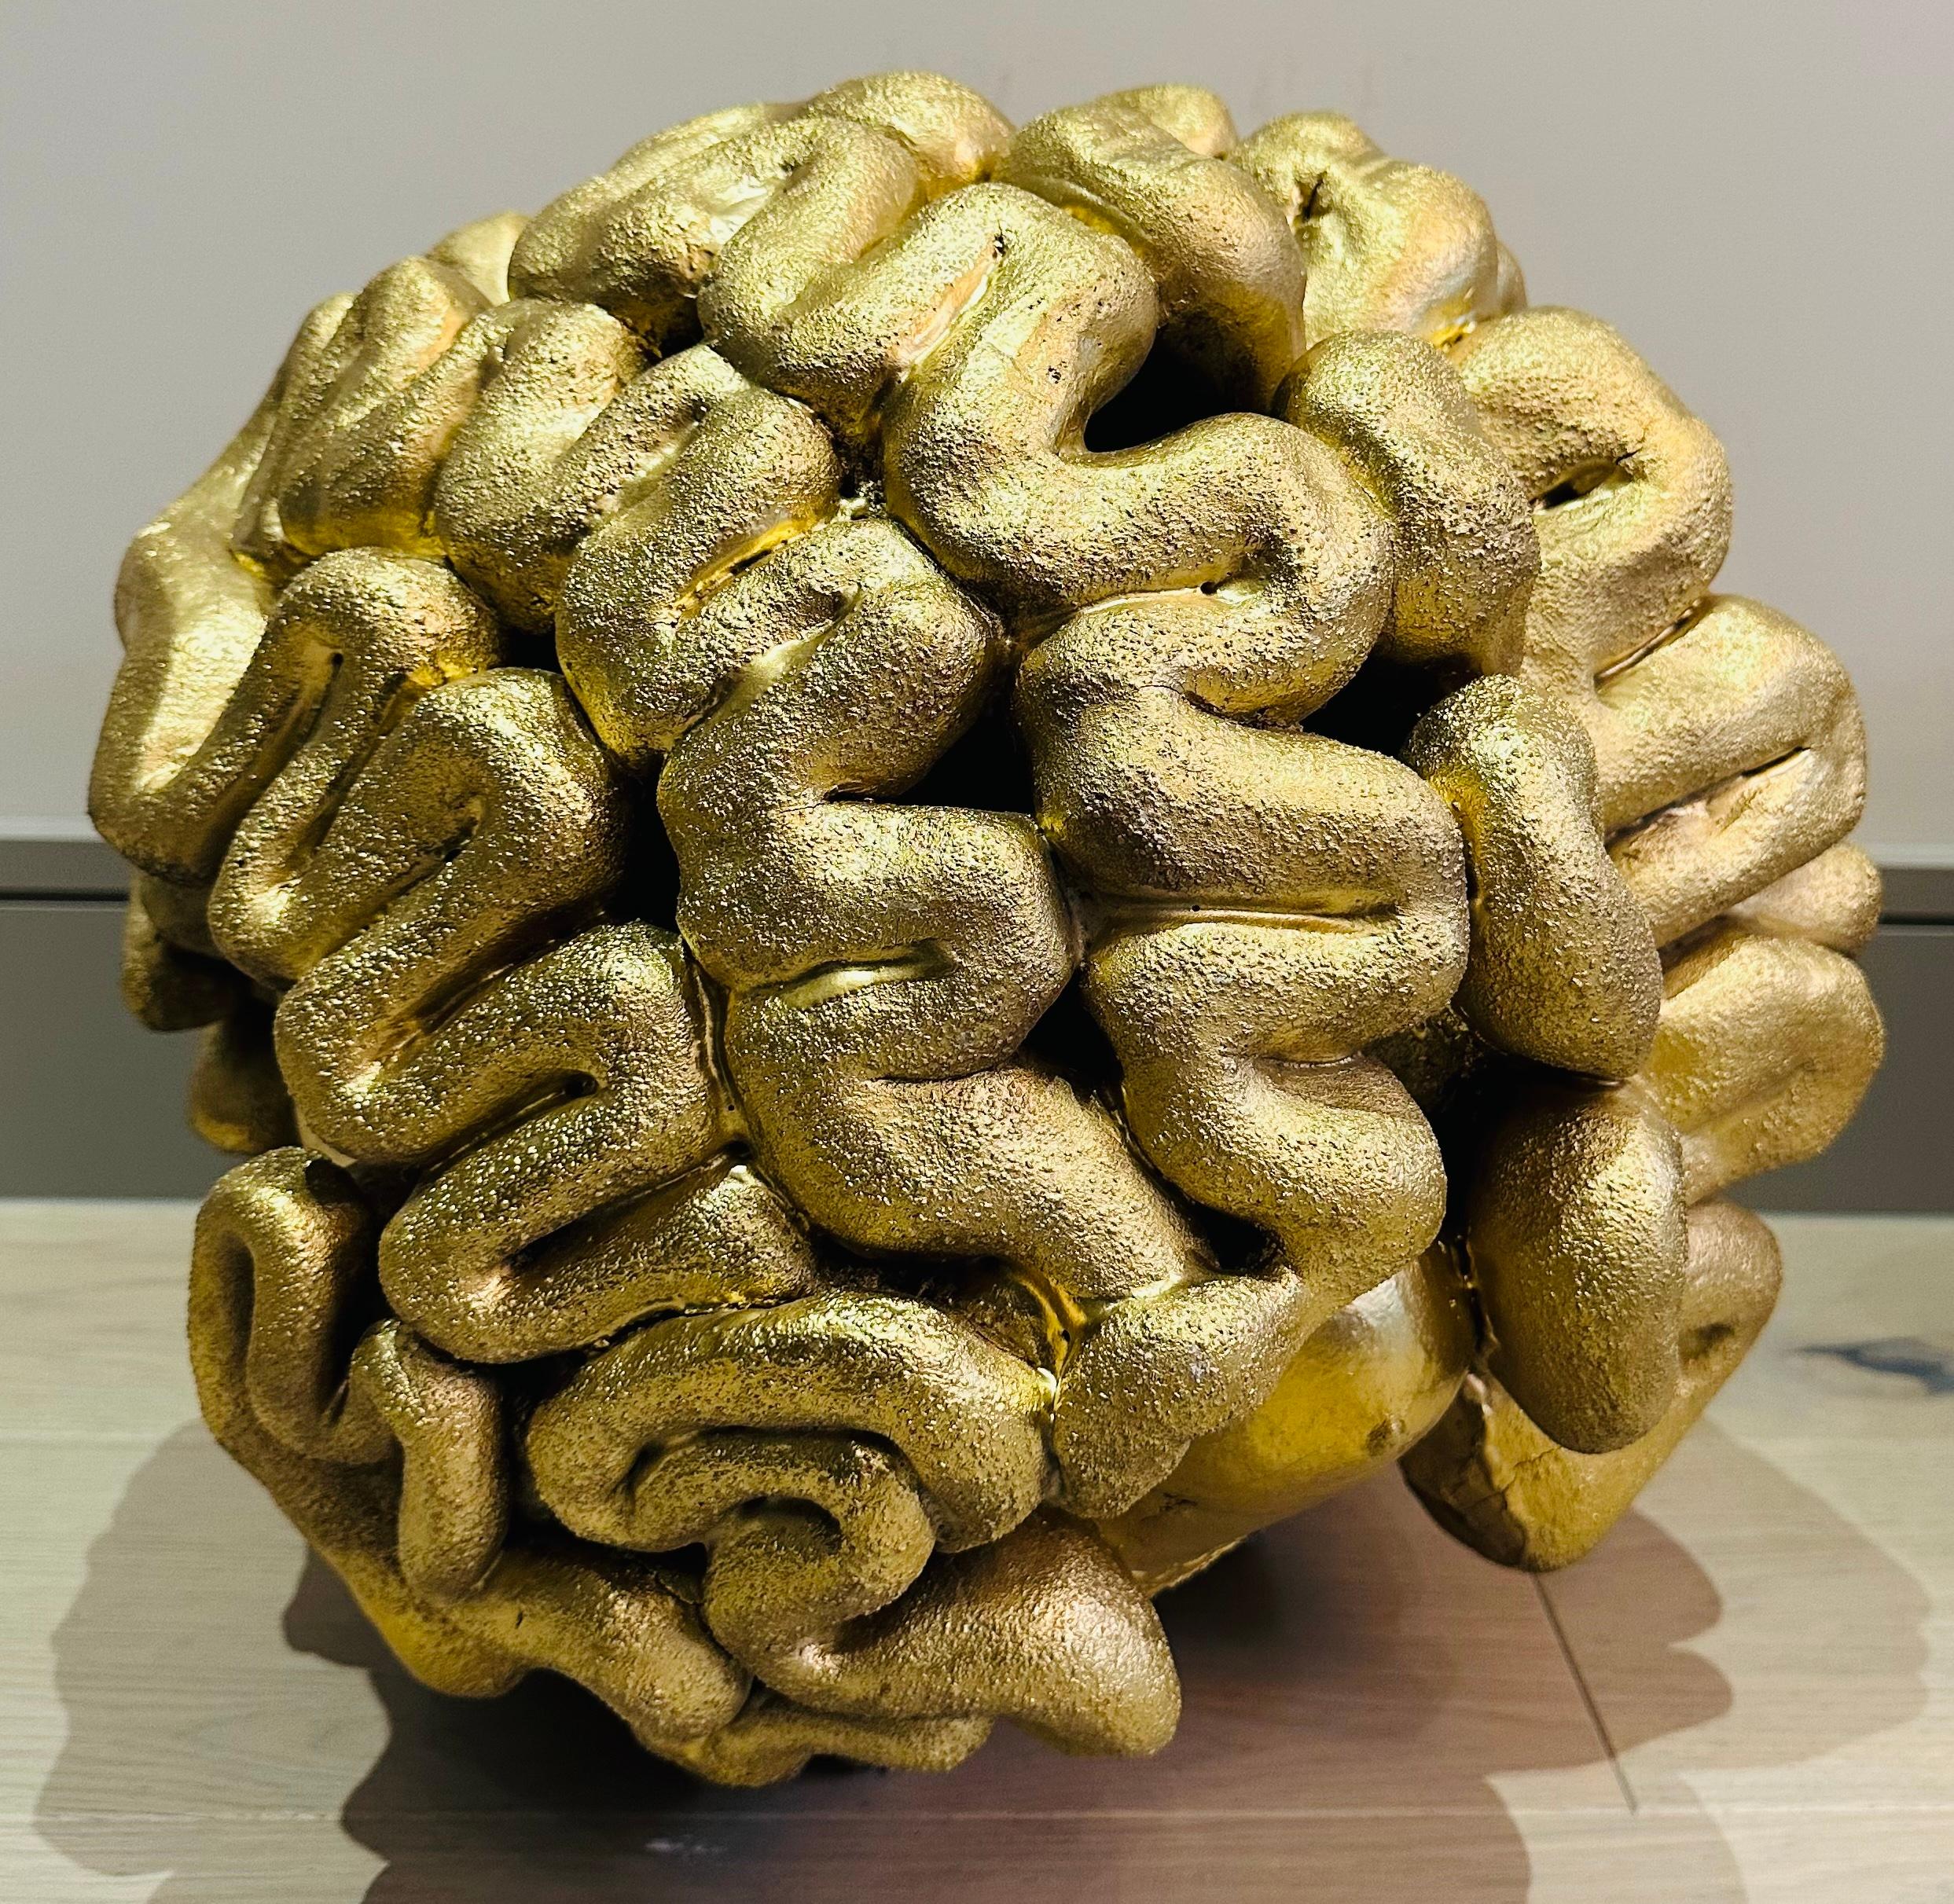 Sculpture abstraite française des années 1960 en terre cuite de style space-age futuriste en forme de cerveau.  La sculpture a été peinte à la bombe d'or pour plus d'effet, ce qui lui confère un caractère dramatique et intéressant. Il est très lourd